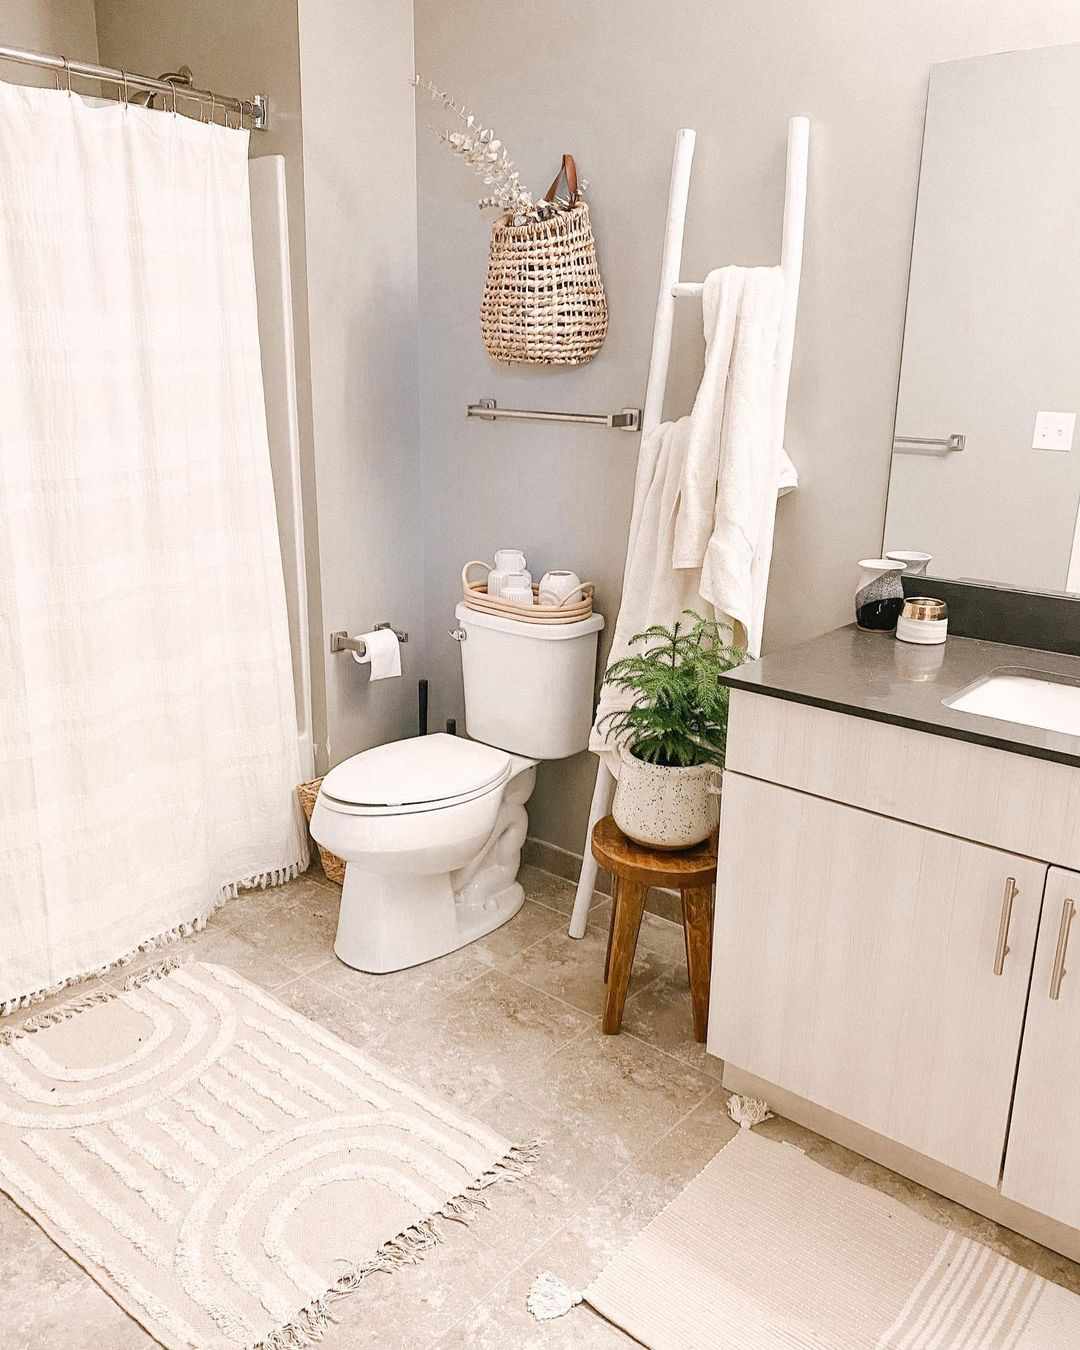 Banheiro pequeno com cestos, planta na banqueta e escada para toalhas